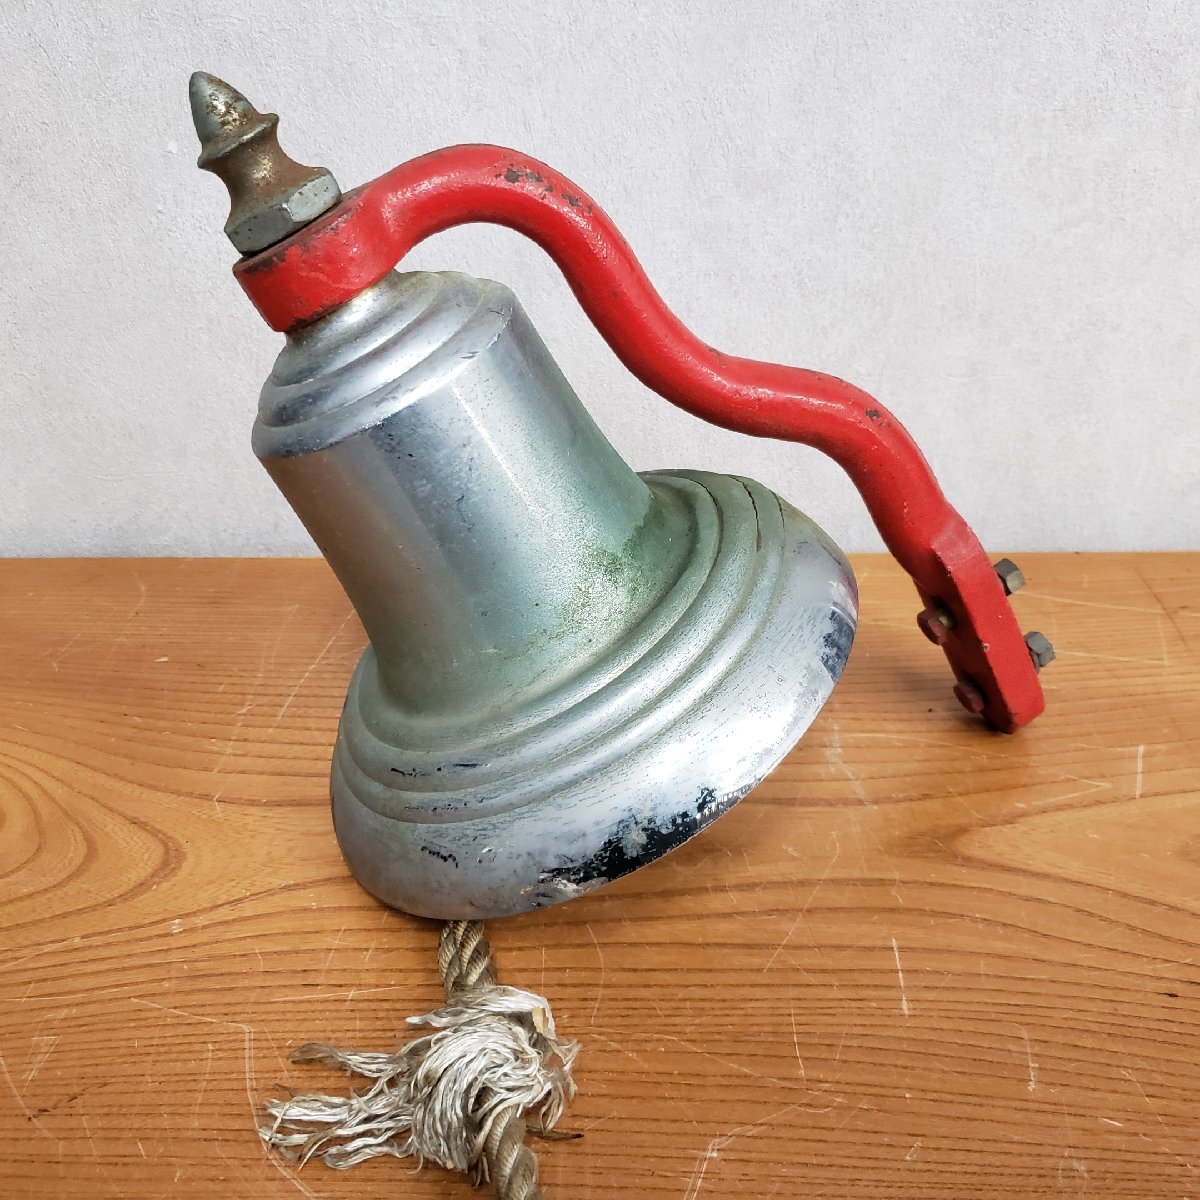  пожарная машина. колокольчик bell диаметр примерно 23cm пожарная машина половина колокольчик морской bell сирена bell старый подлинная вещь годы предмет retro Showa Retro Vintage колокольчик [120s1353]